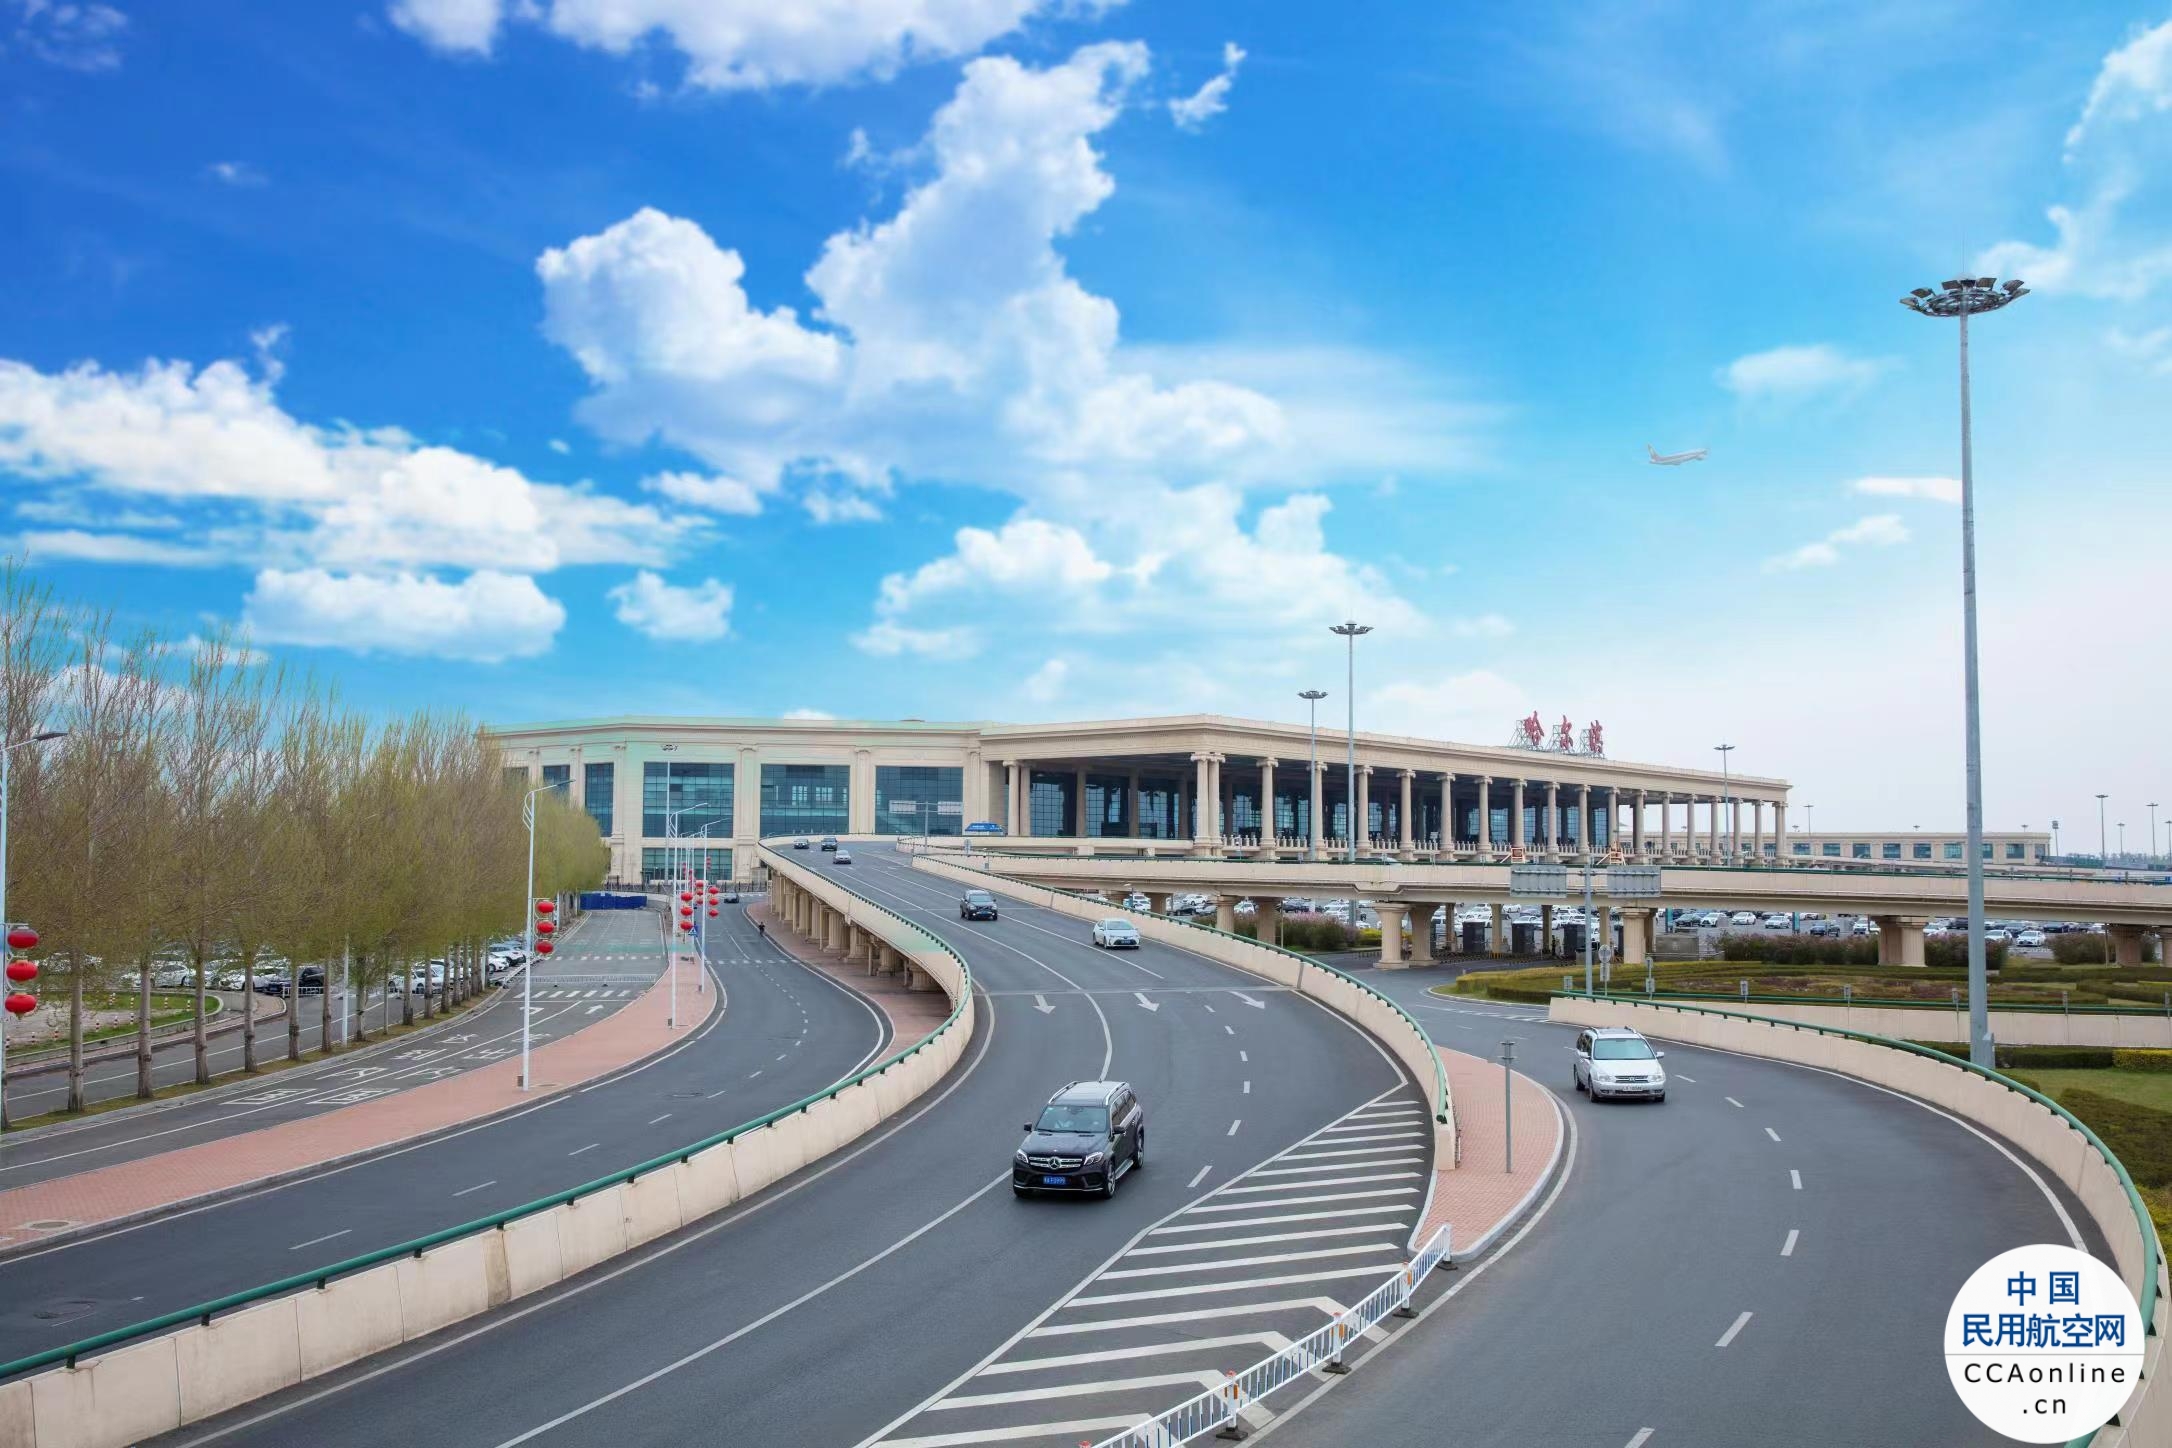 一月份哈尔滨机场单日旅客吞吐量七次打破纪录